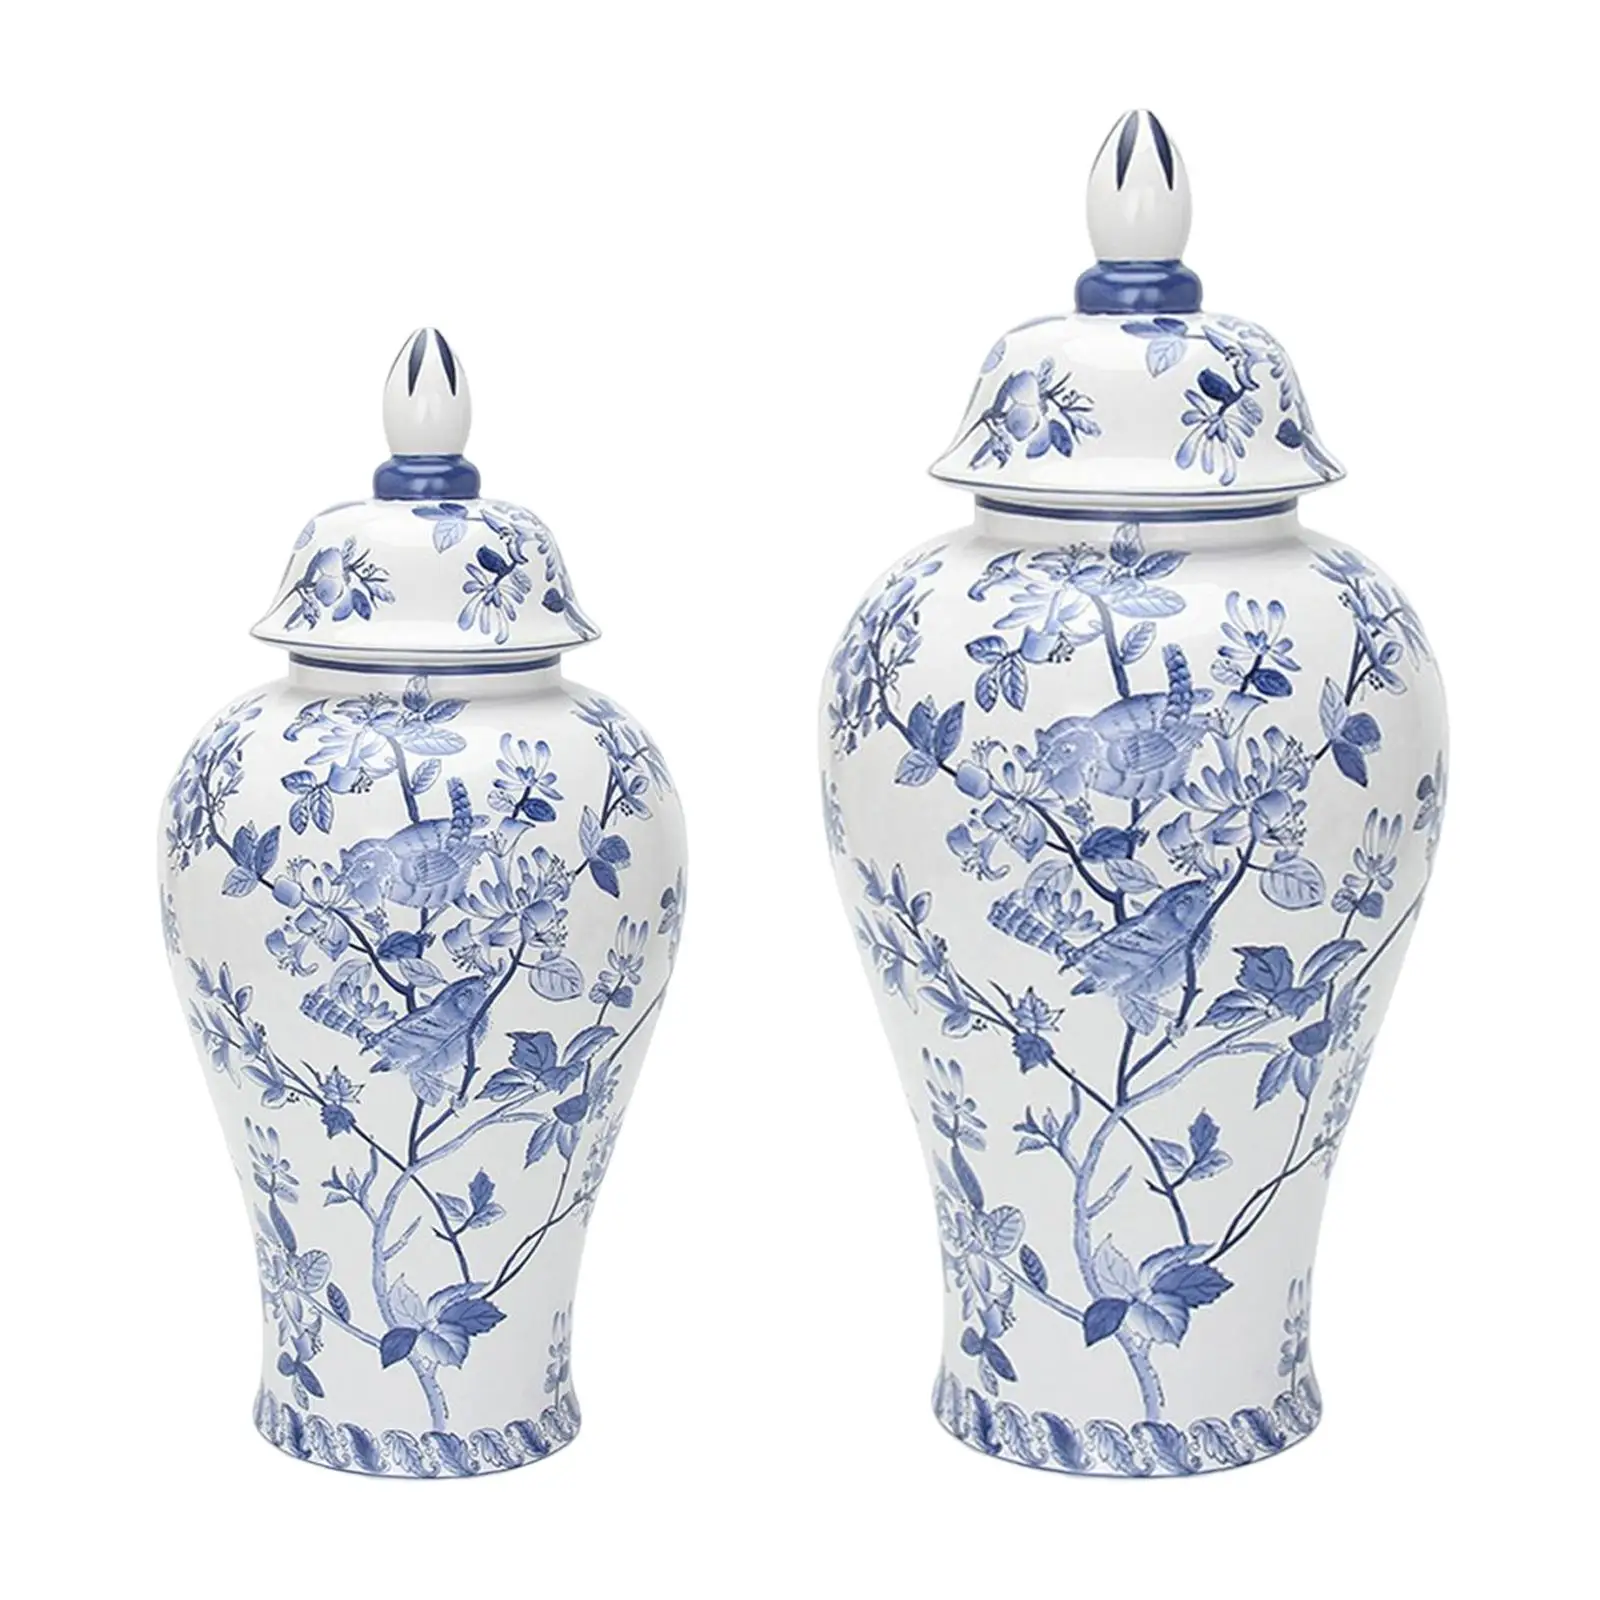 Chinese Traditional Porcelain Ginger Jar Ceramic Flower Vase for Bedroom